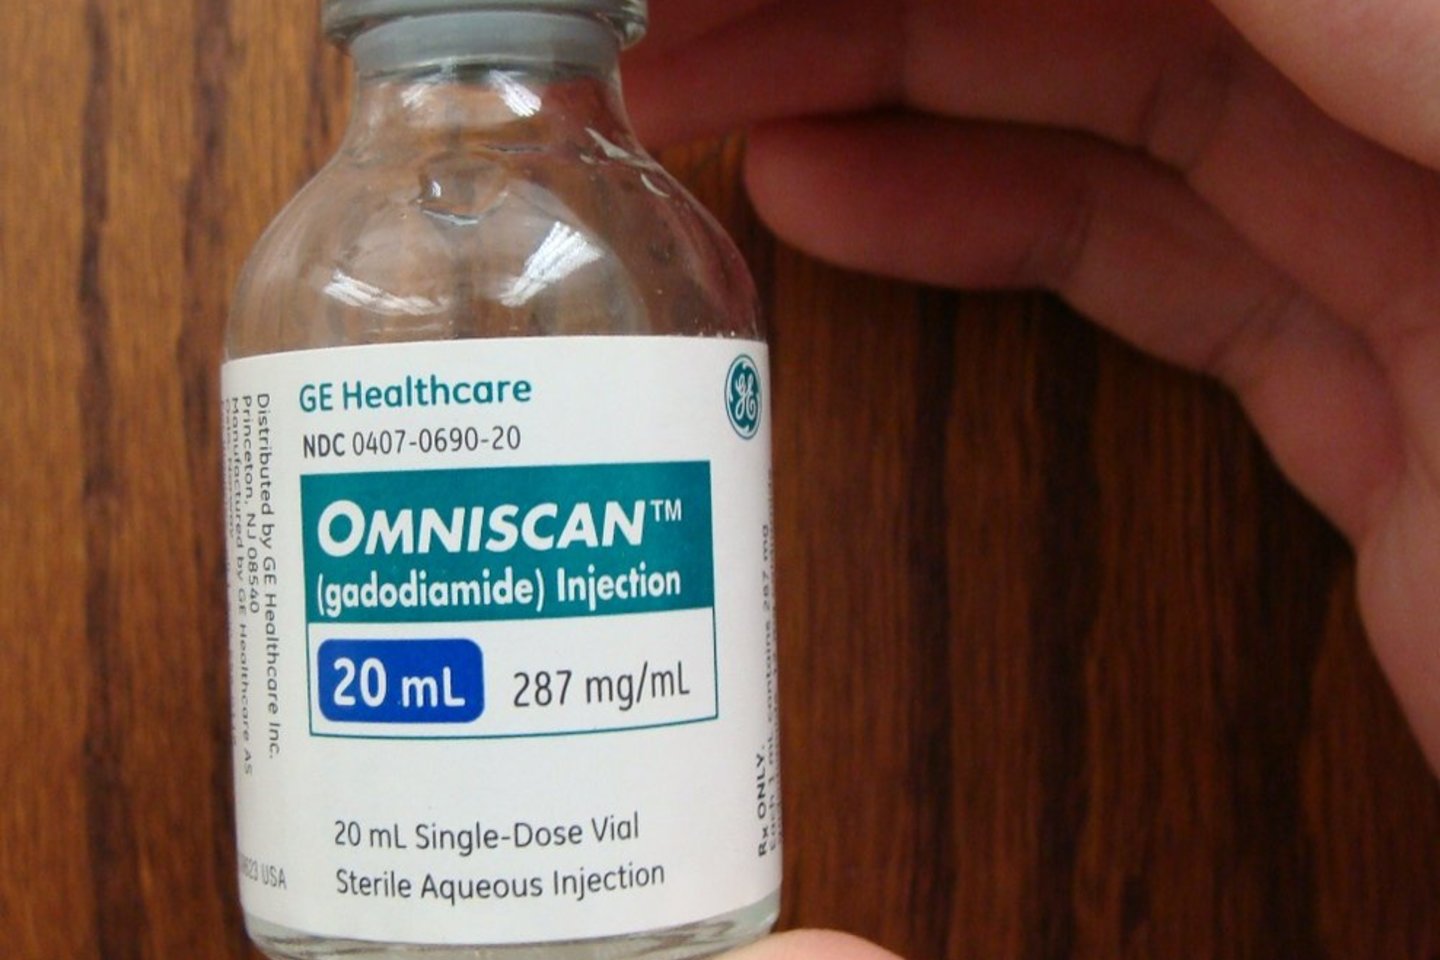 „Omniscan“ uždraustas Europos Sąjungoje, nes jo veiklioji medžiaga gadodiamidas yra laikoma pavojinga.<br>Wikipedia.org nuotr.